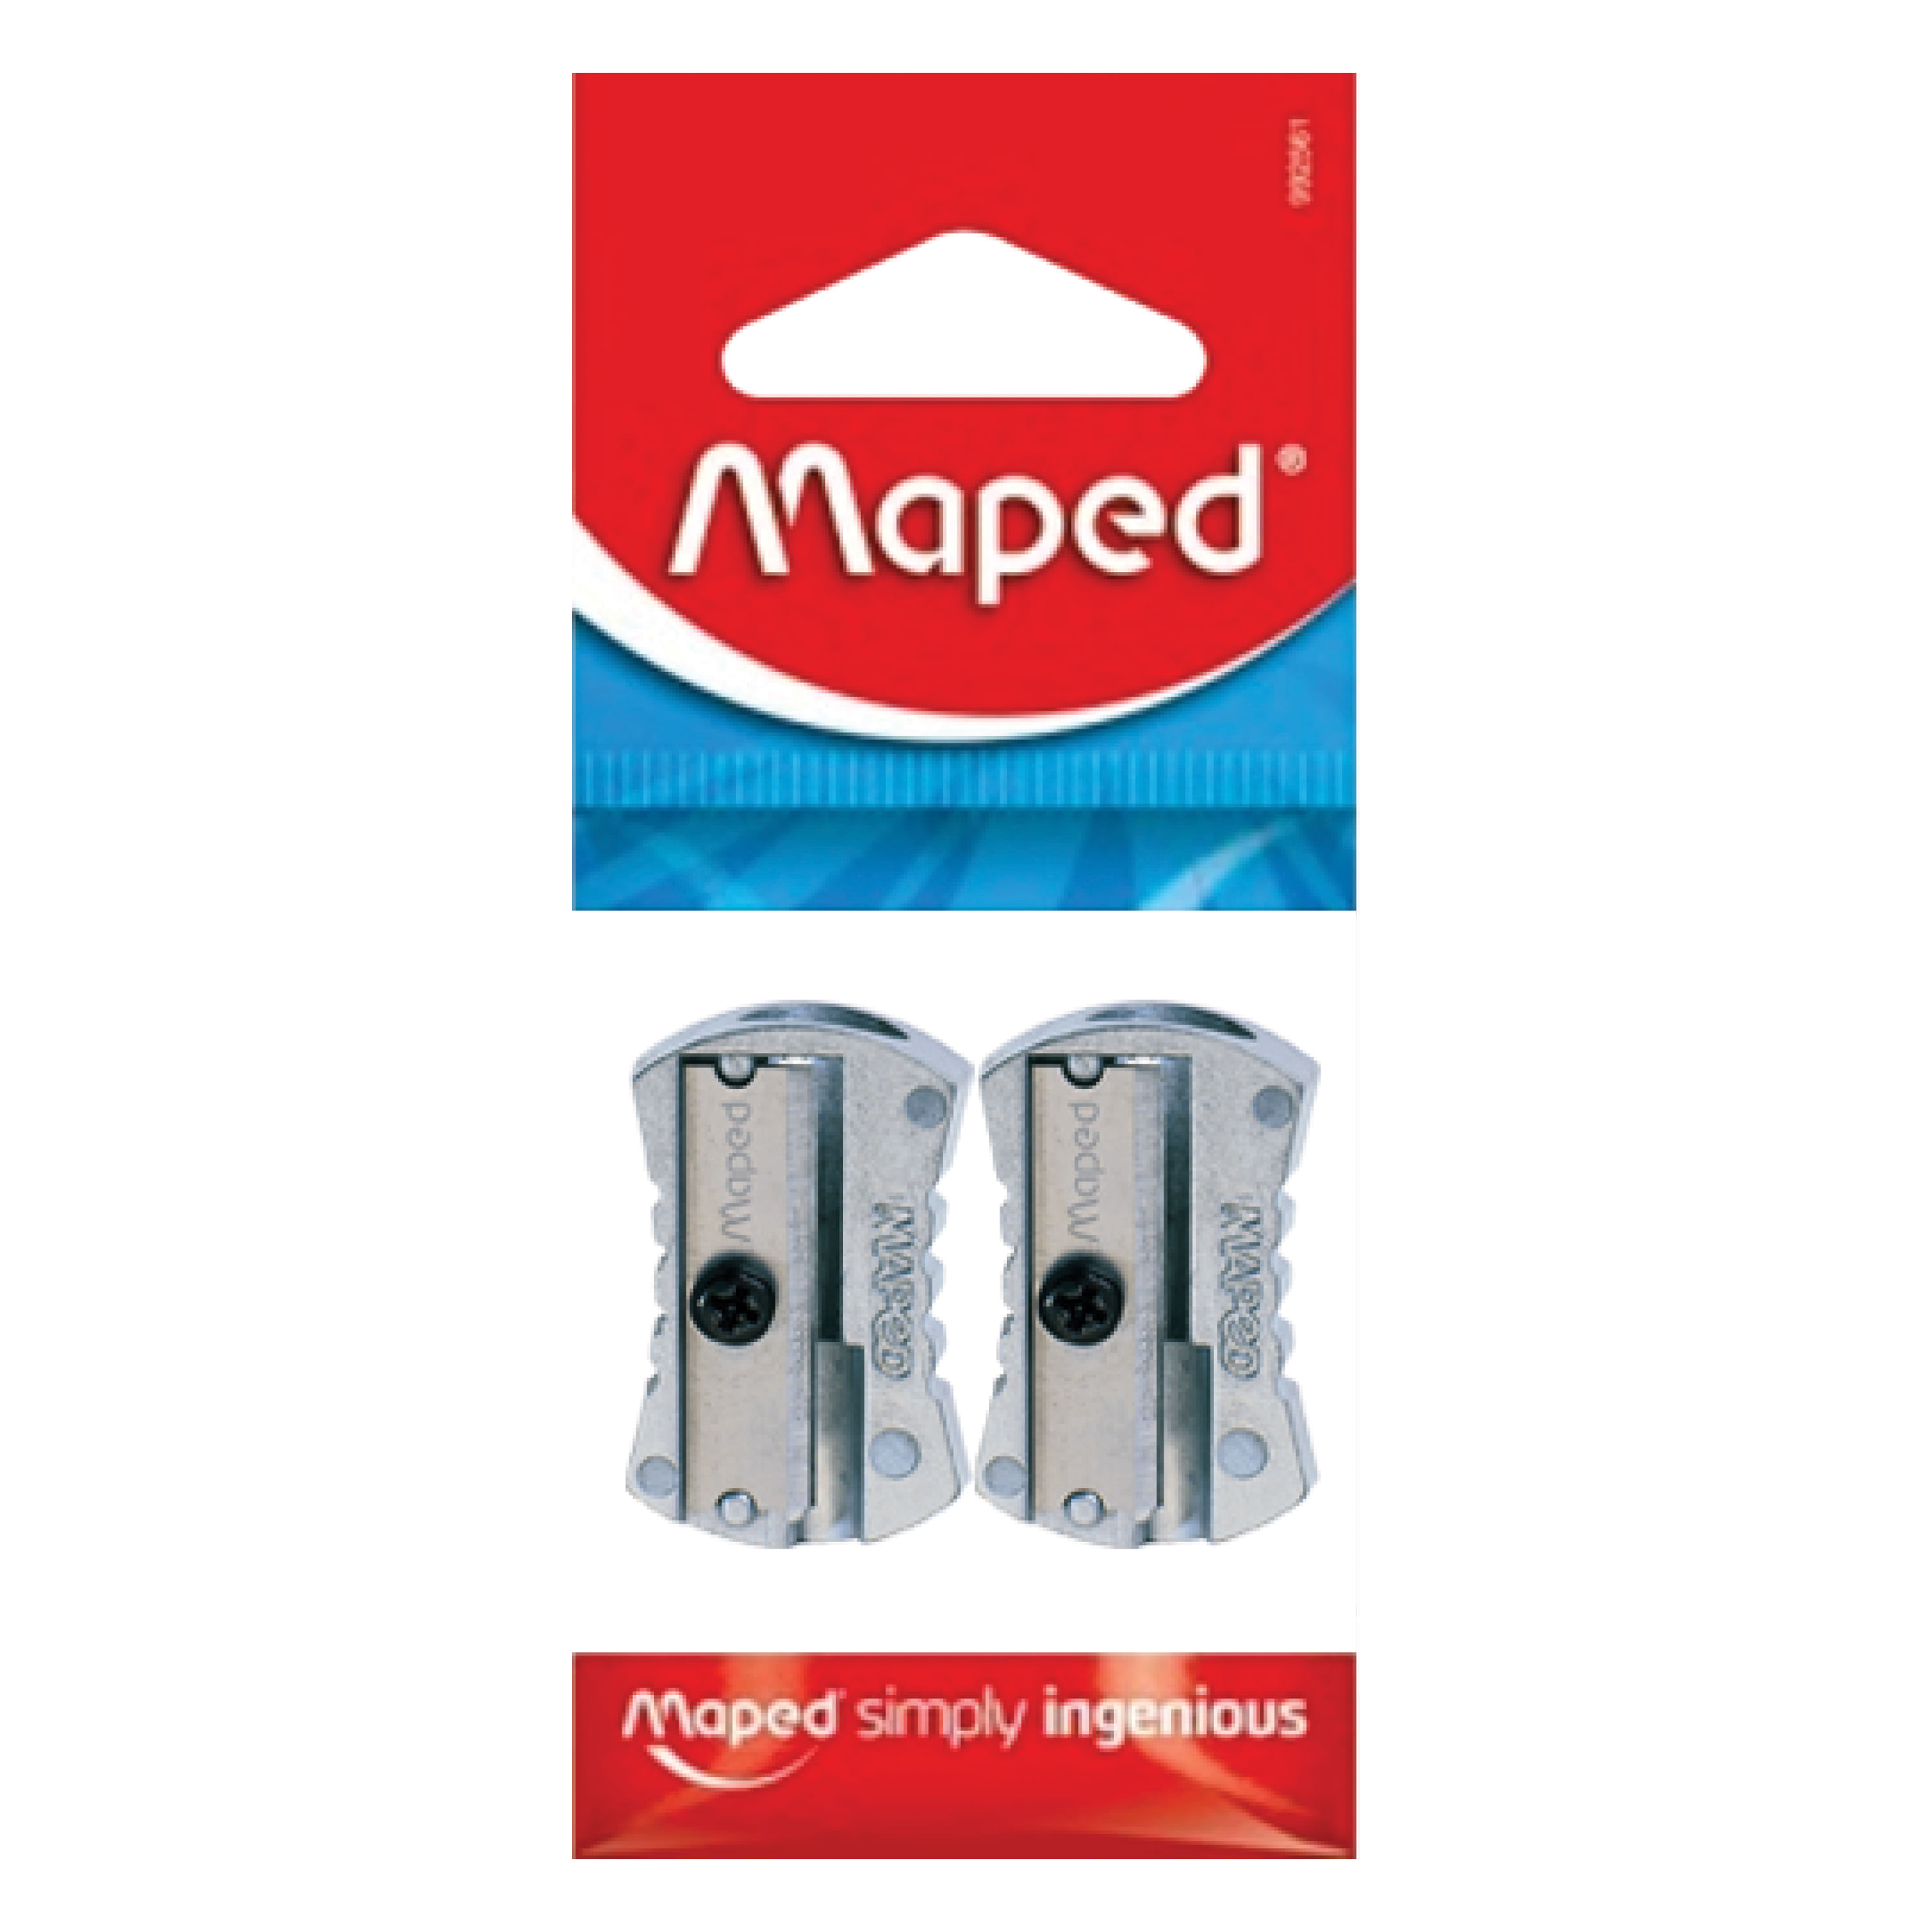 Comprar Sacapuntas Maped Plastico Con/Deposito Shaker Blister 1 Unidad, Walmart Costa Rica - Maxi Palí